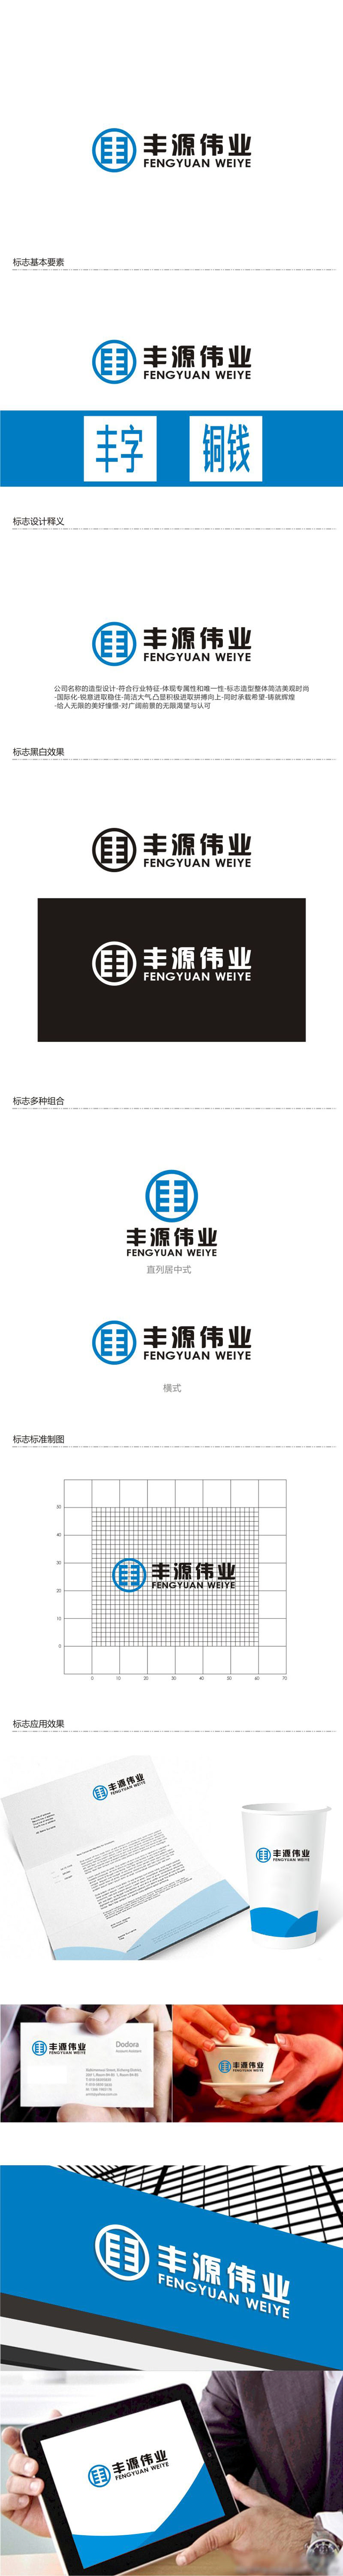 孙永炼的北京丰源伟业建筑装饰工程有限公司logo设计